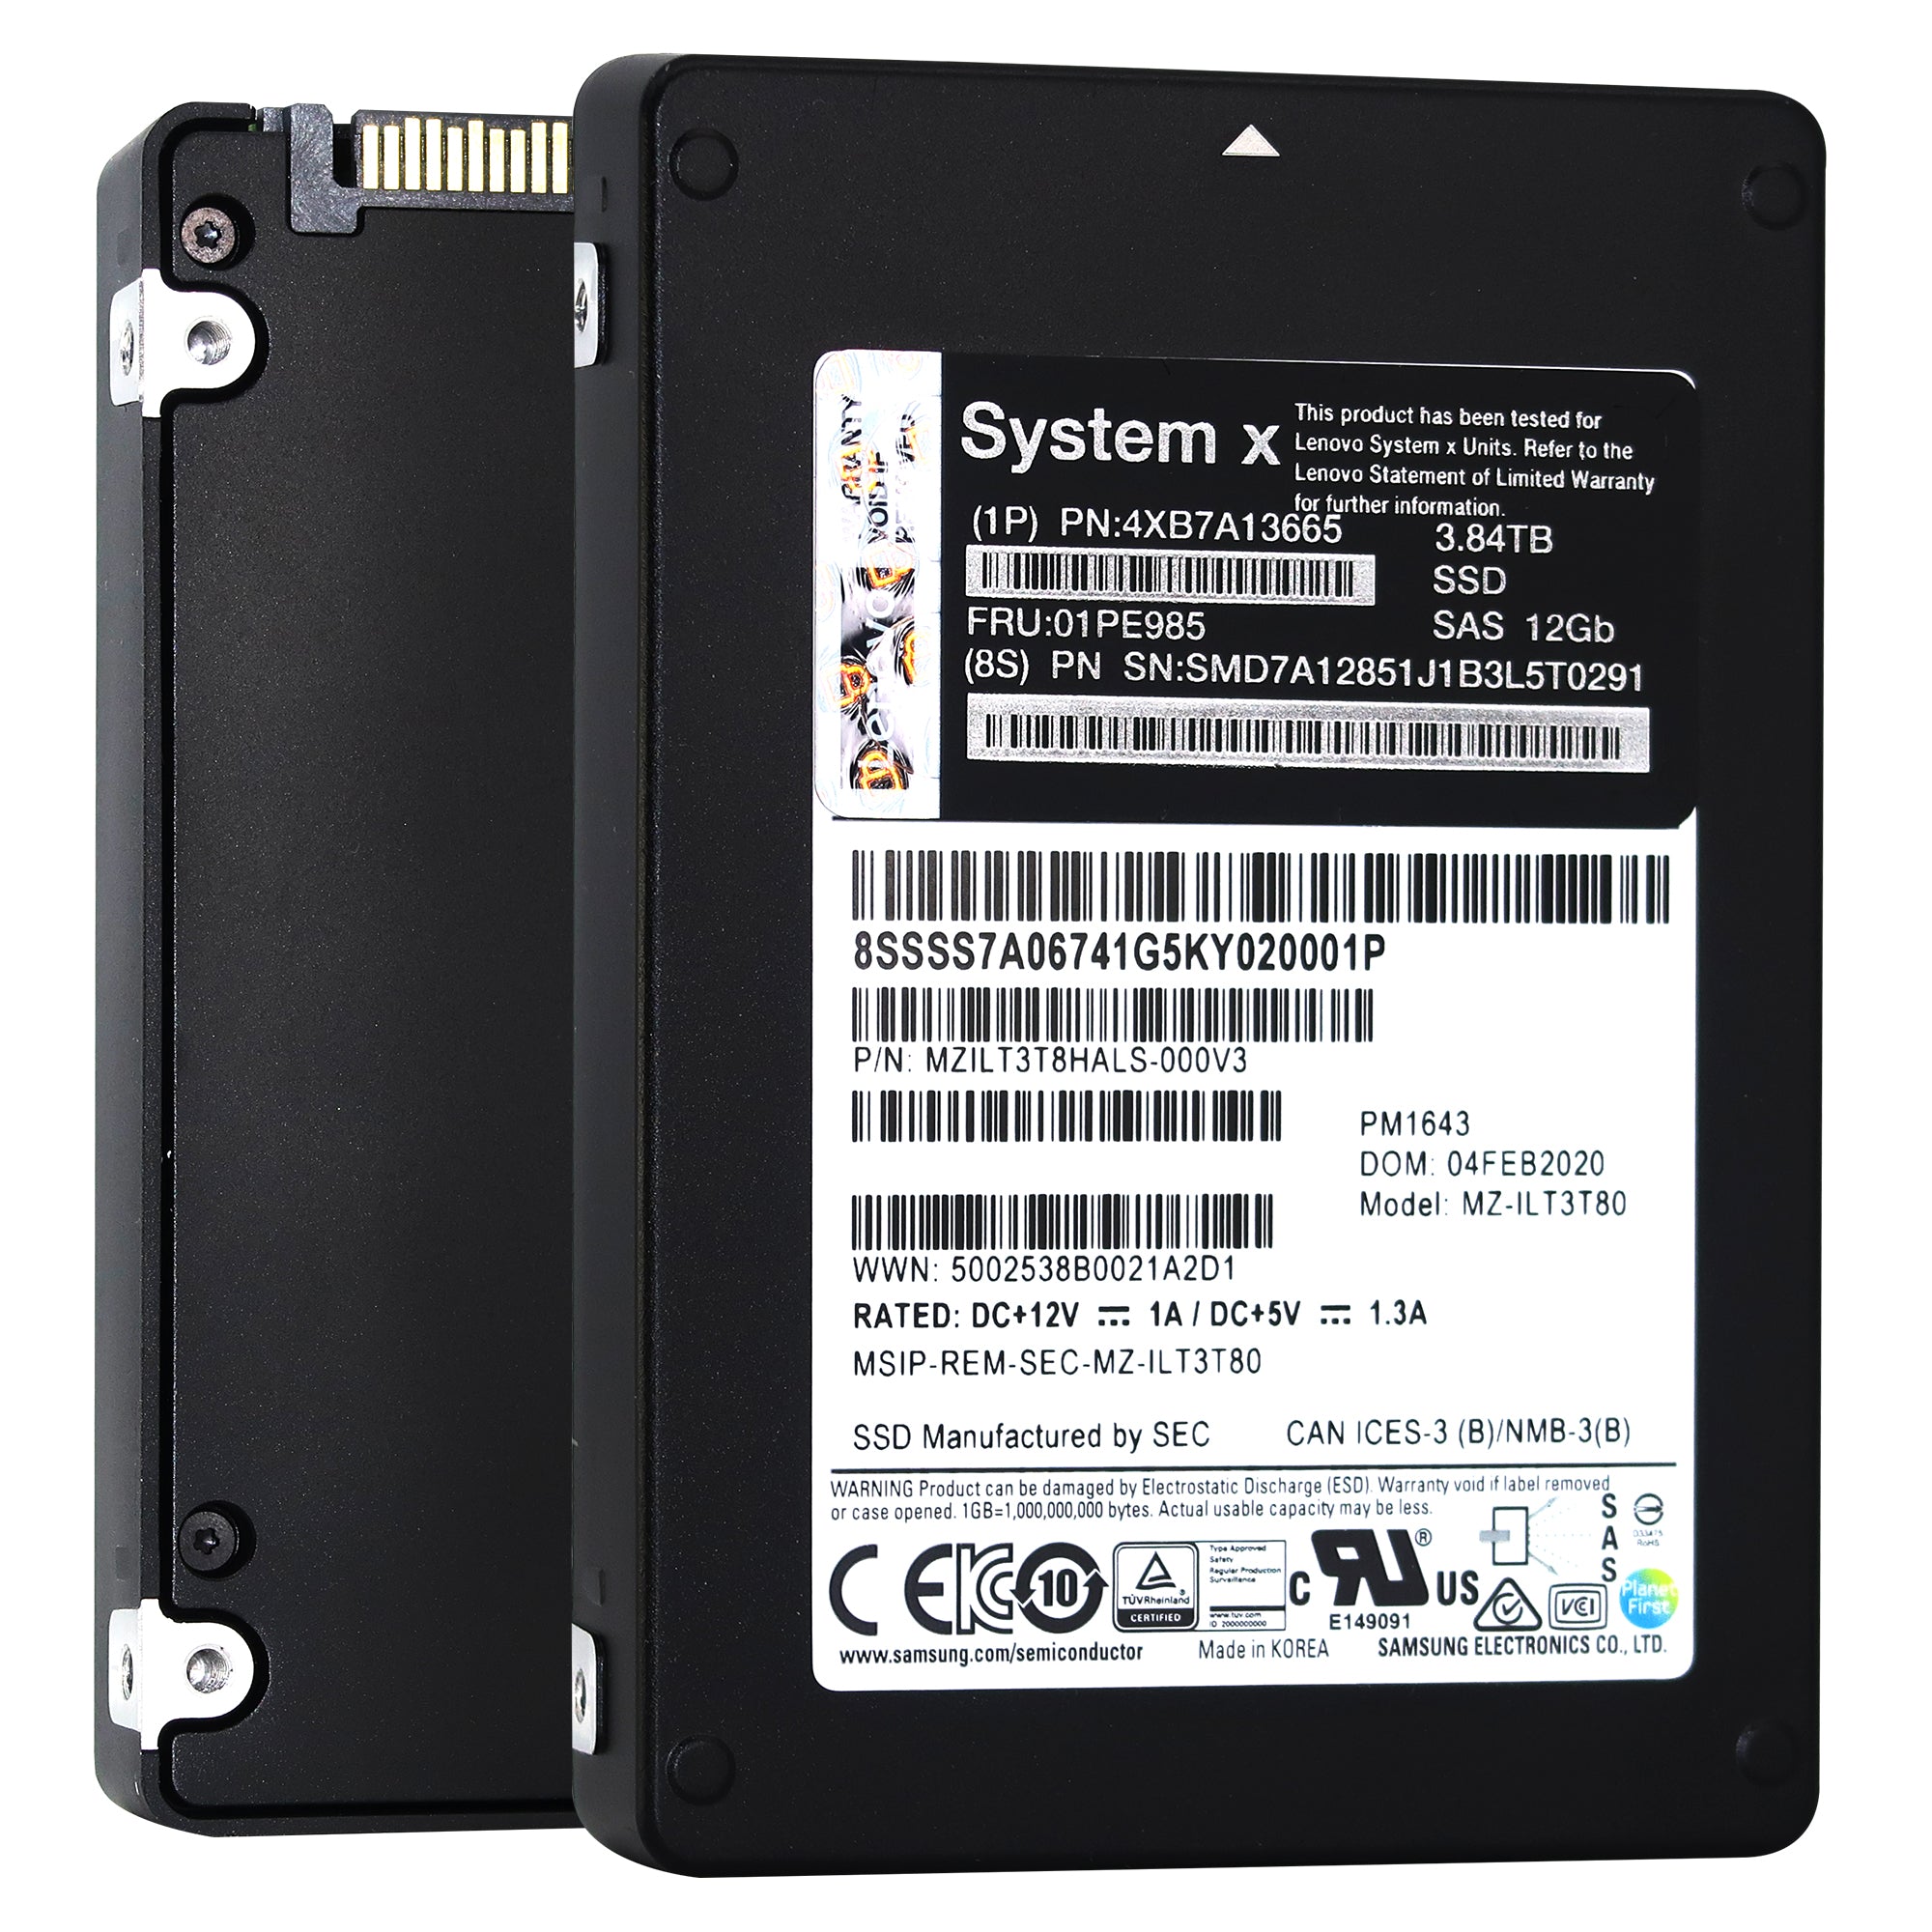 Samsung/Lenovo PM1643 MZILT3T8HALS MZ-ILT3T80 3.84TB SAS 12Gb/s 3D TLC 2.5in Solid State Drive